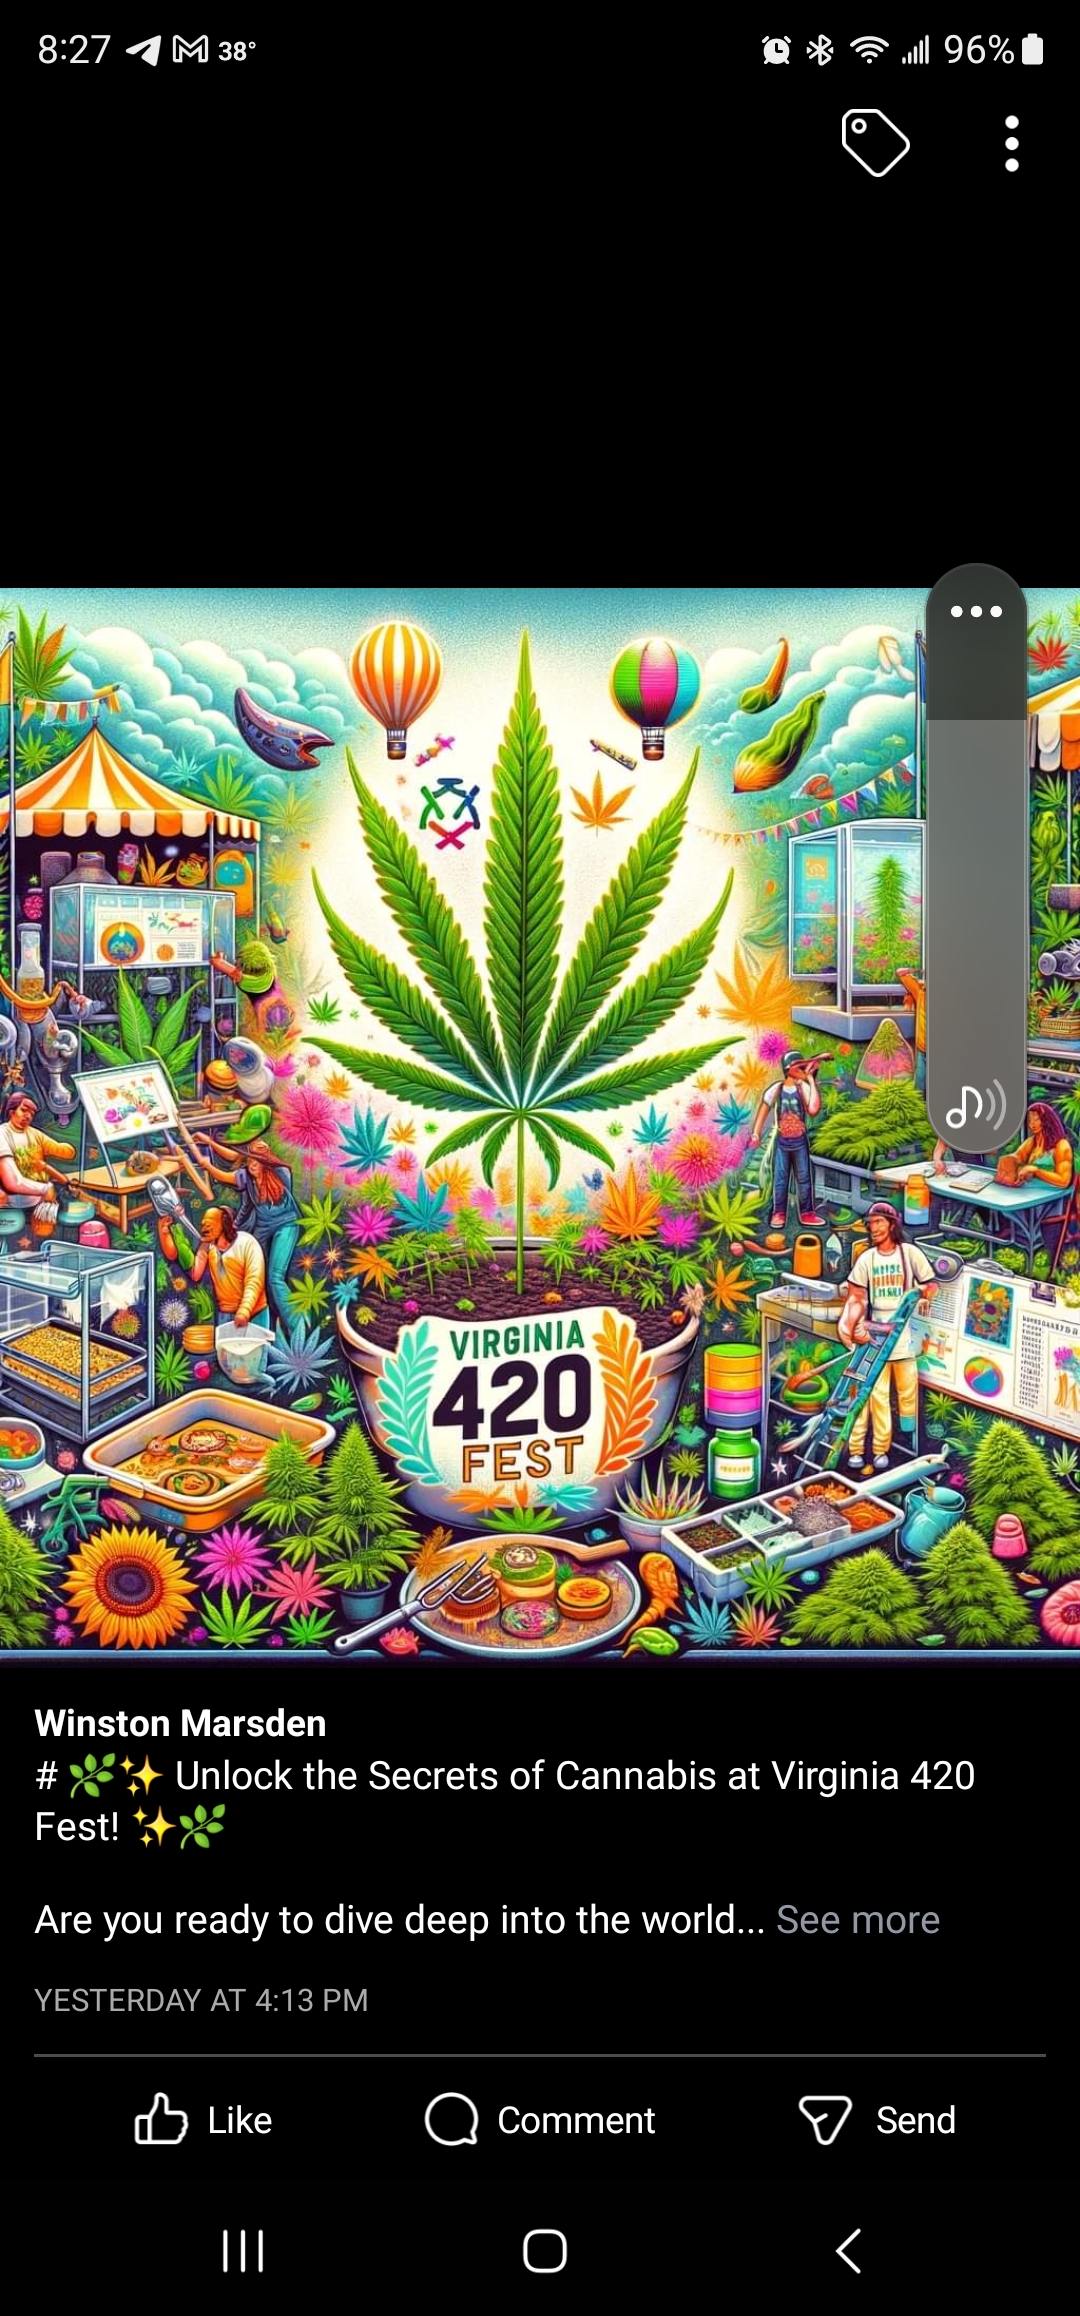 Virginia 420 Fest